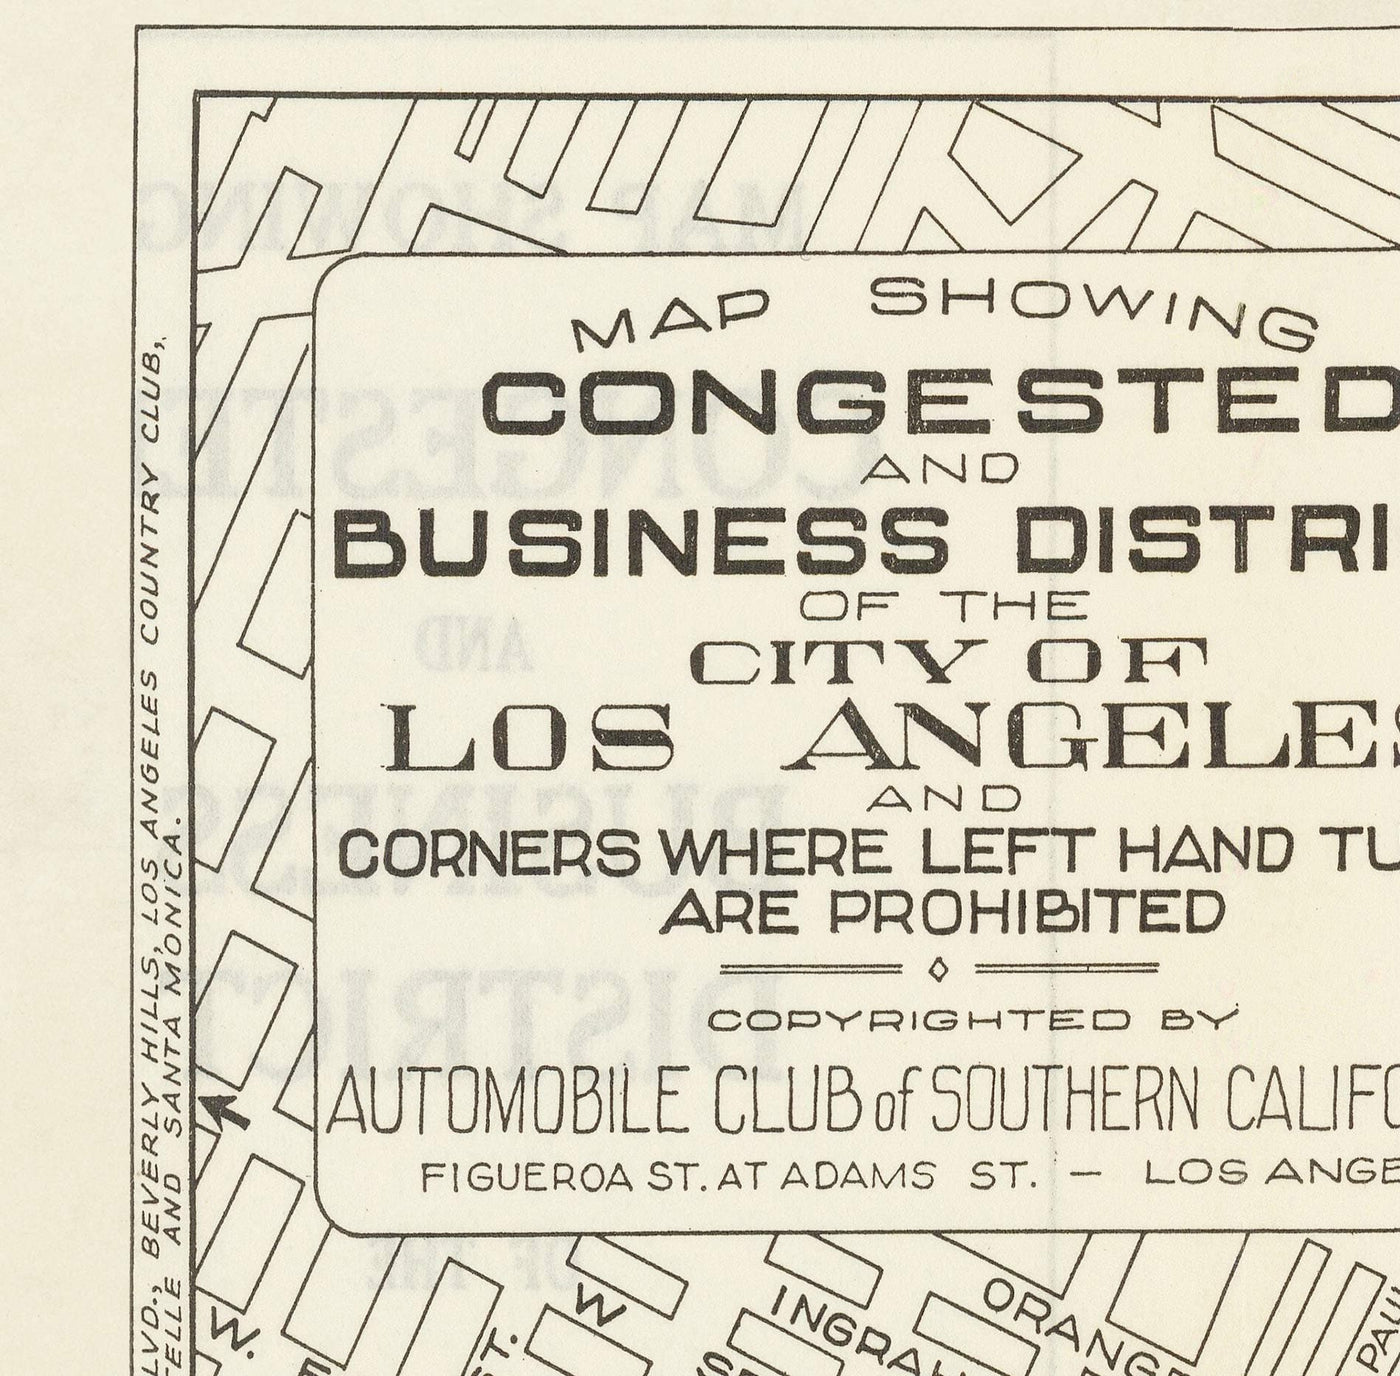 Alte Staukarte von Los Angeles, 1920 - Seltener Auto-Verkehrsführer von Downtown LA